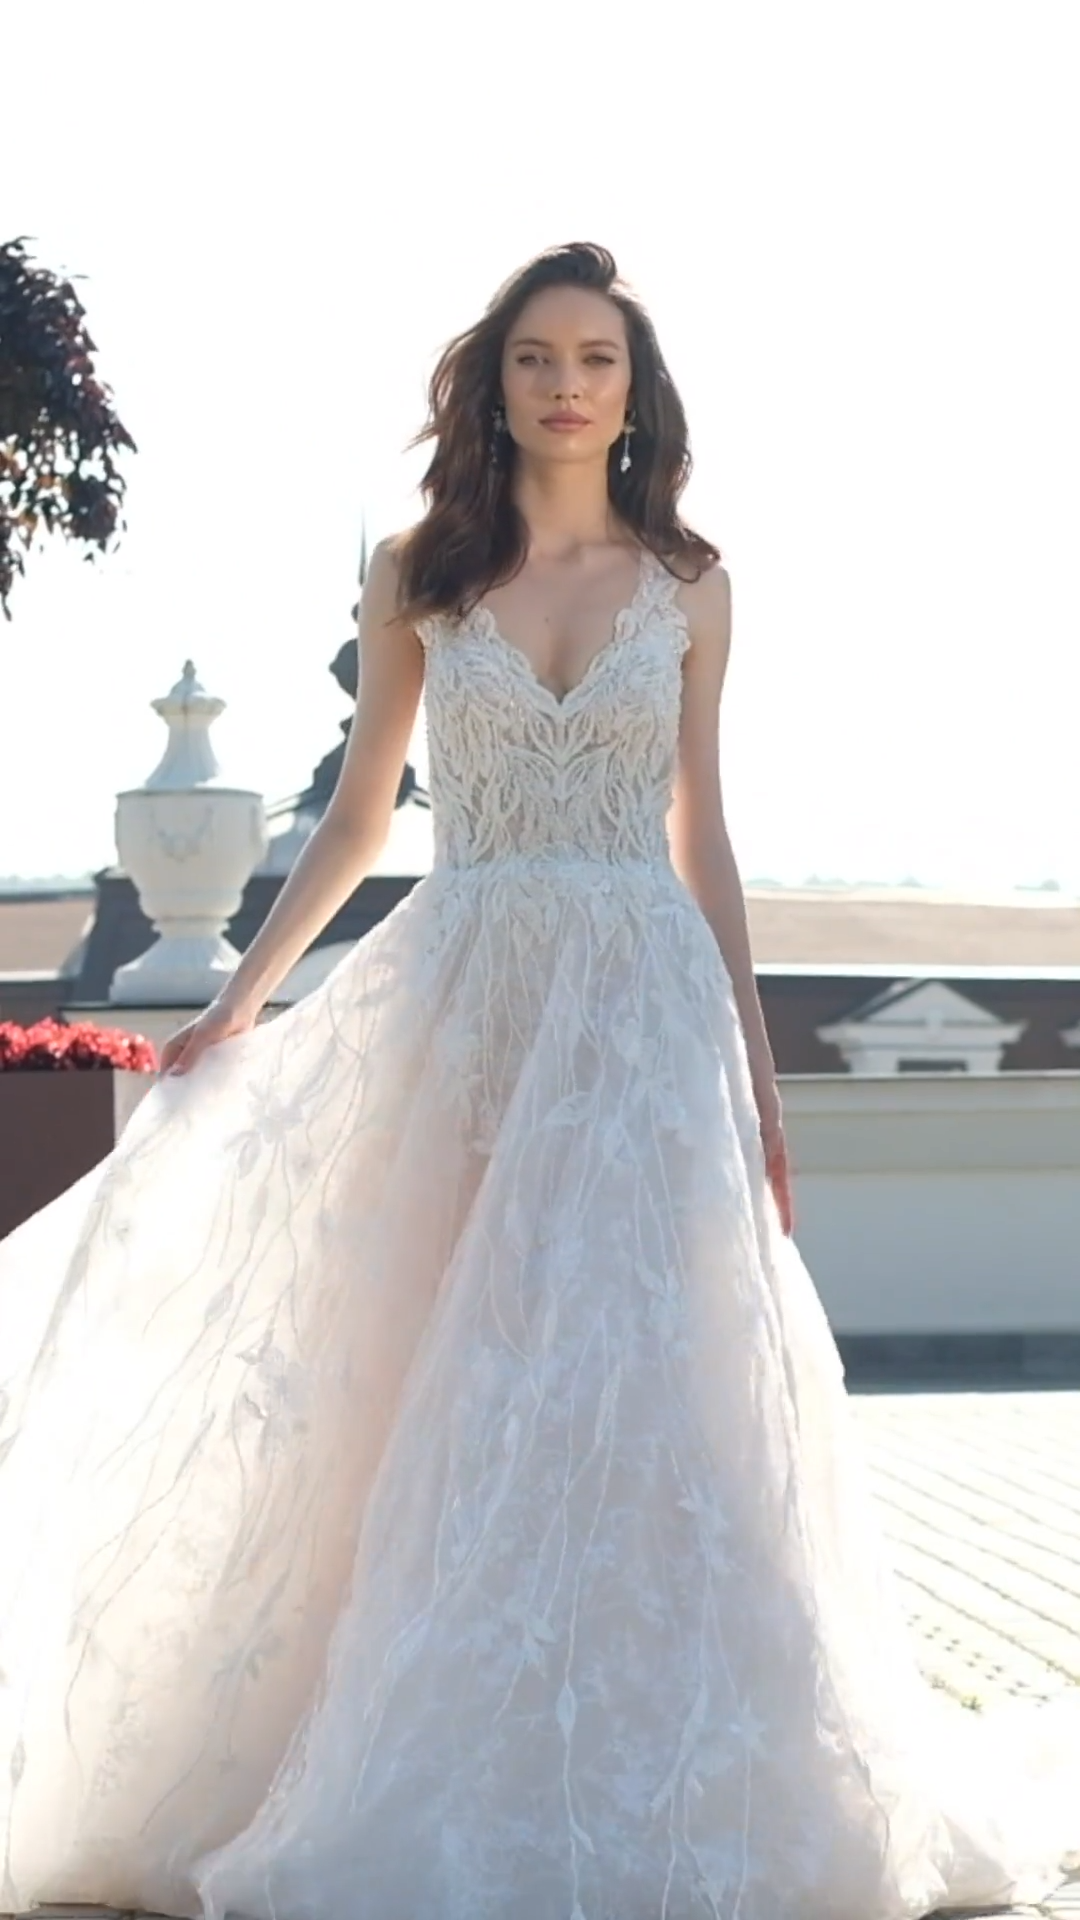 ValStefani ELYSEE lavish designer wedding dresses for the fancy bride